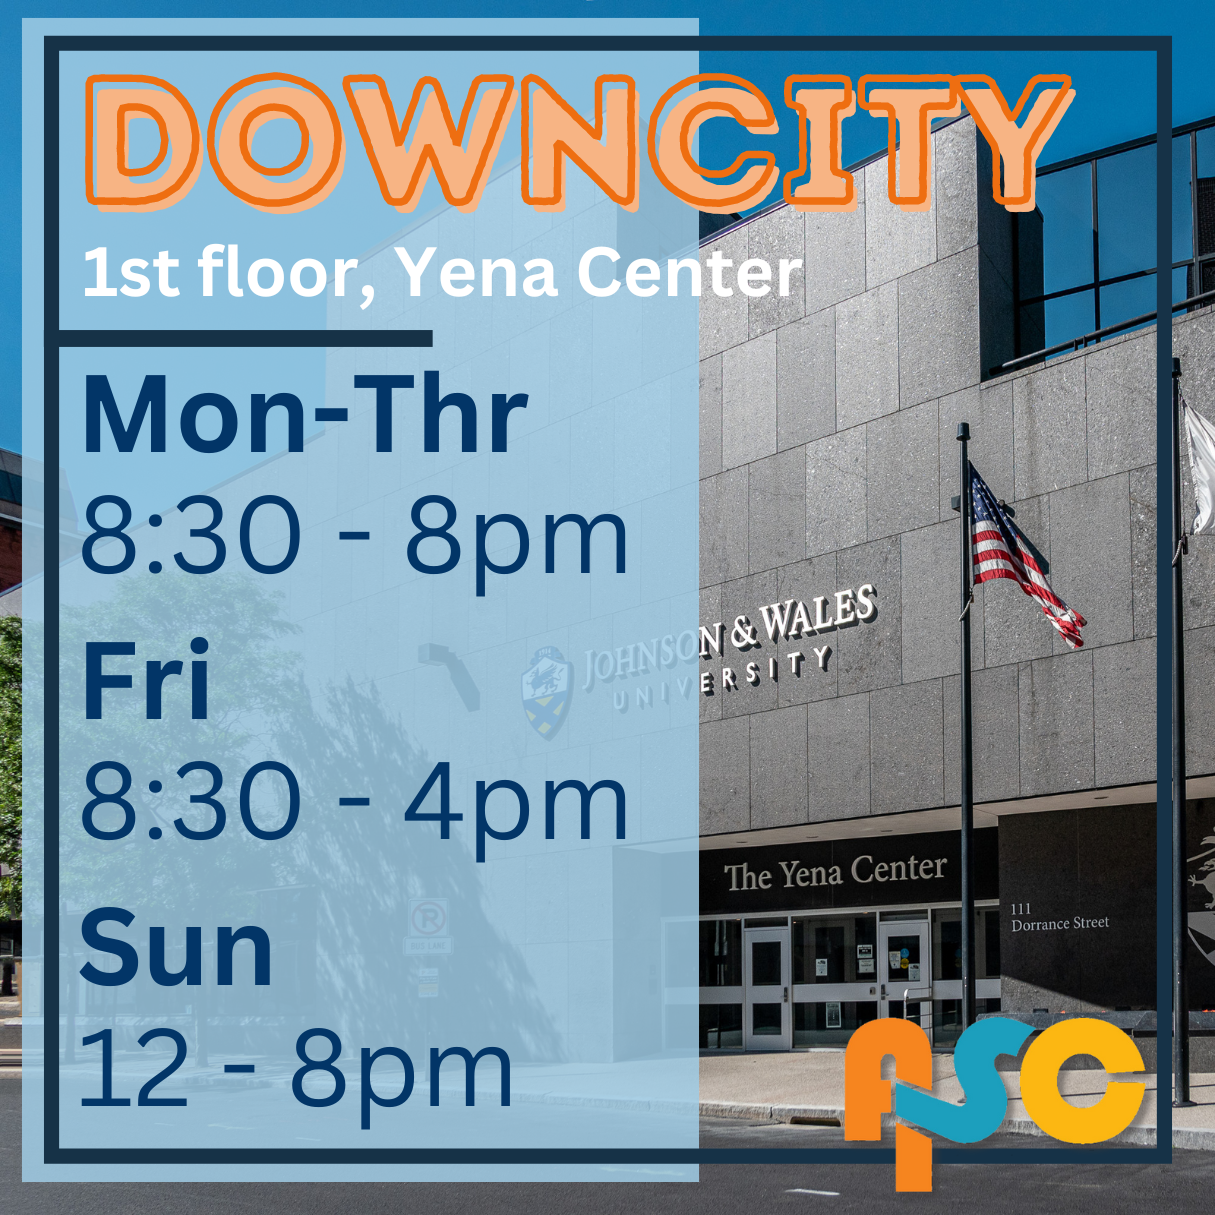 Downcity, 1st floor, Yena Center, Mon-Thr 8:30-8pm, Fri 8:30-4pm, Sun 12-8pm